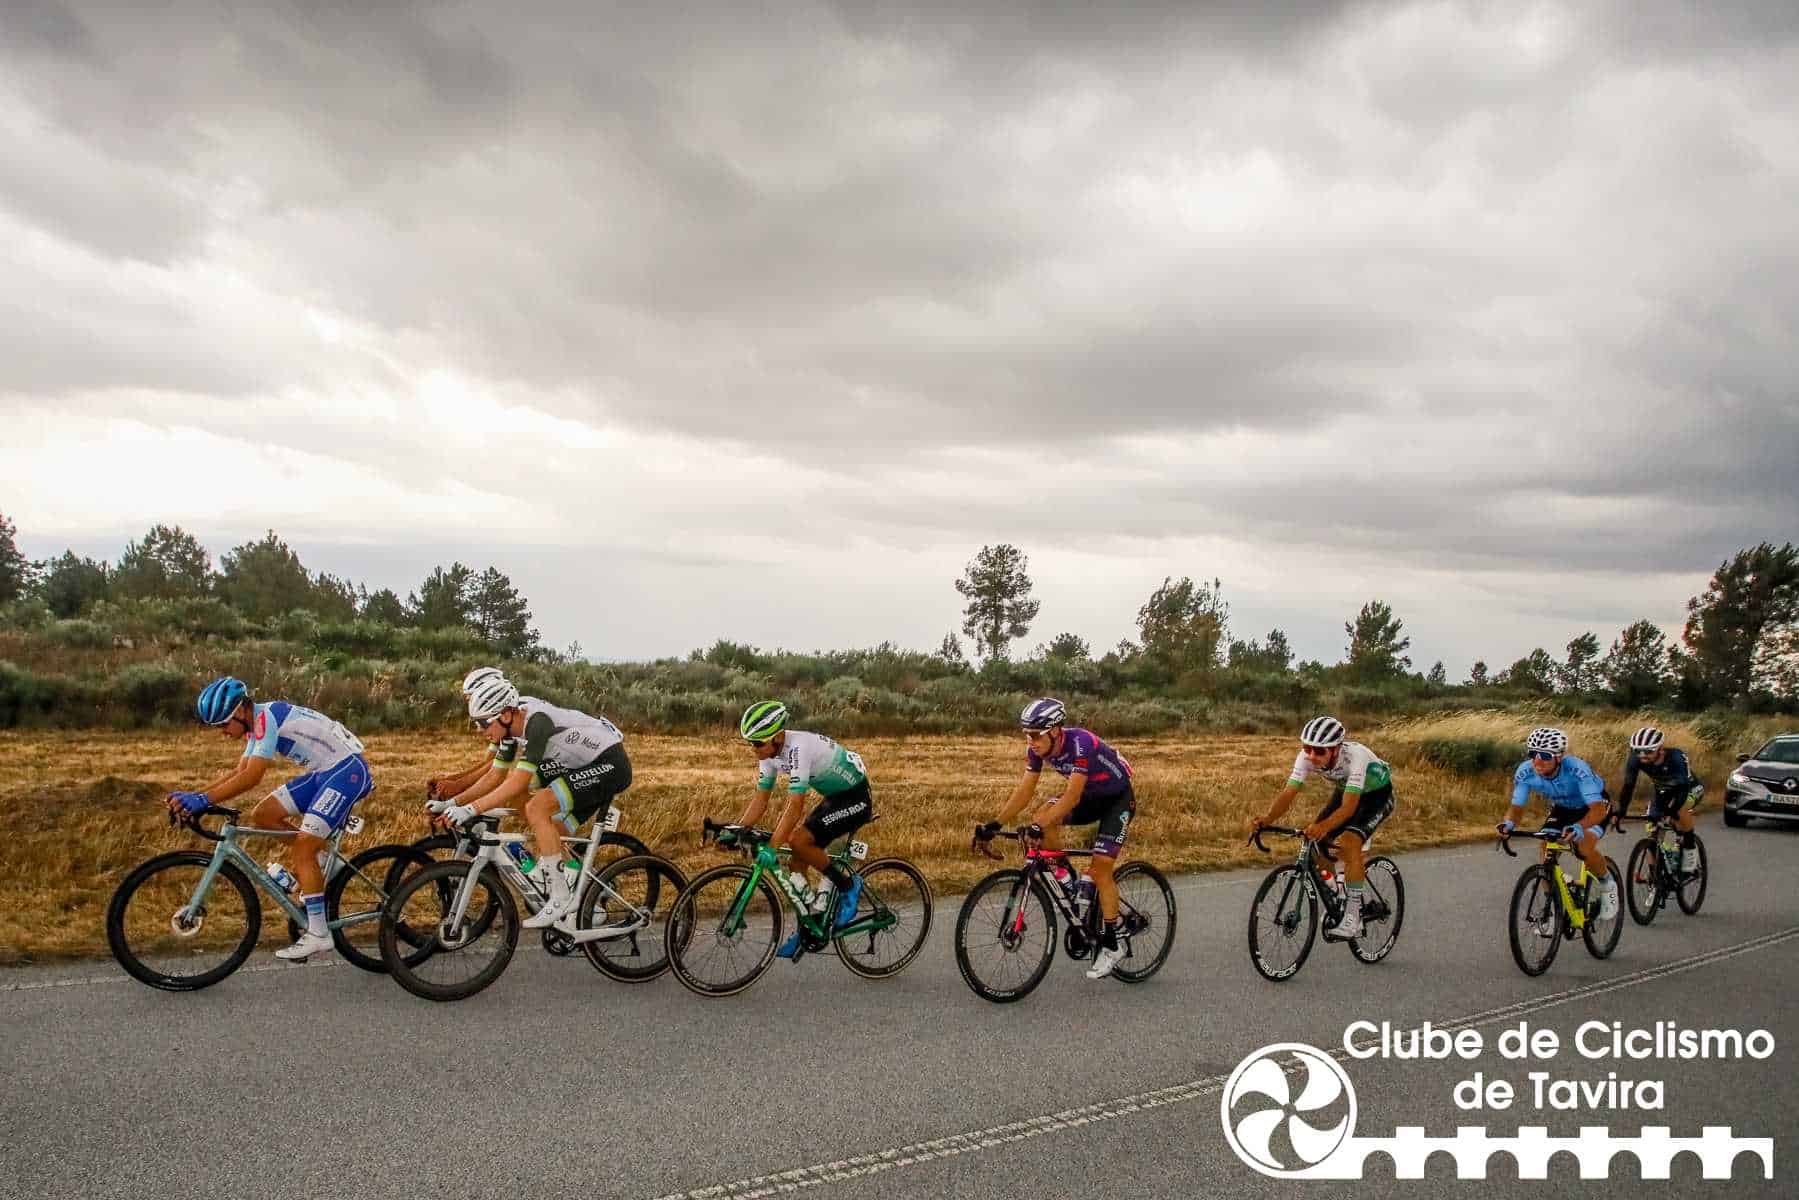 Clube de Ciclismo de Tavira - Grande Prémio Internacional Beiras e Serra da Estrela 202363